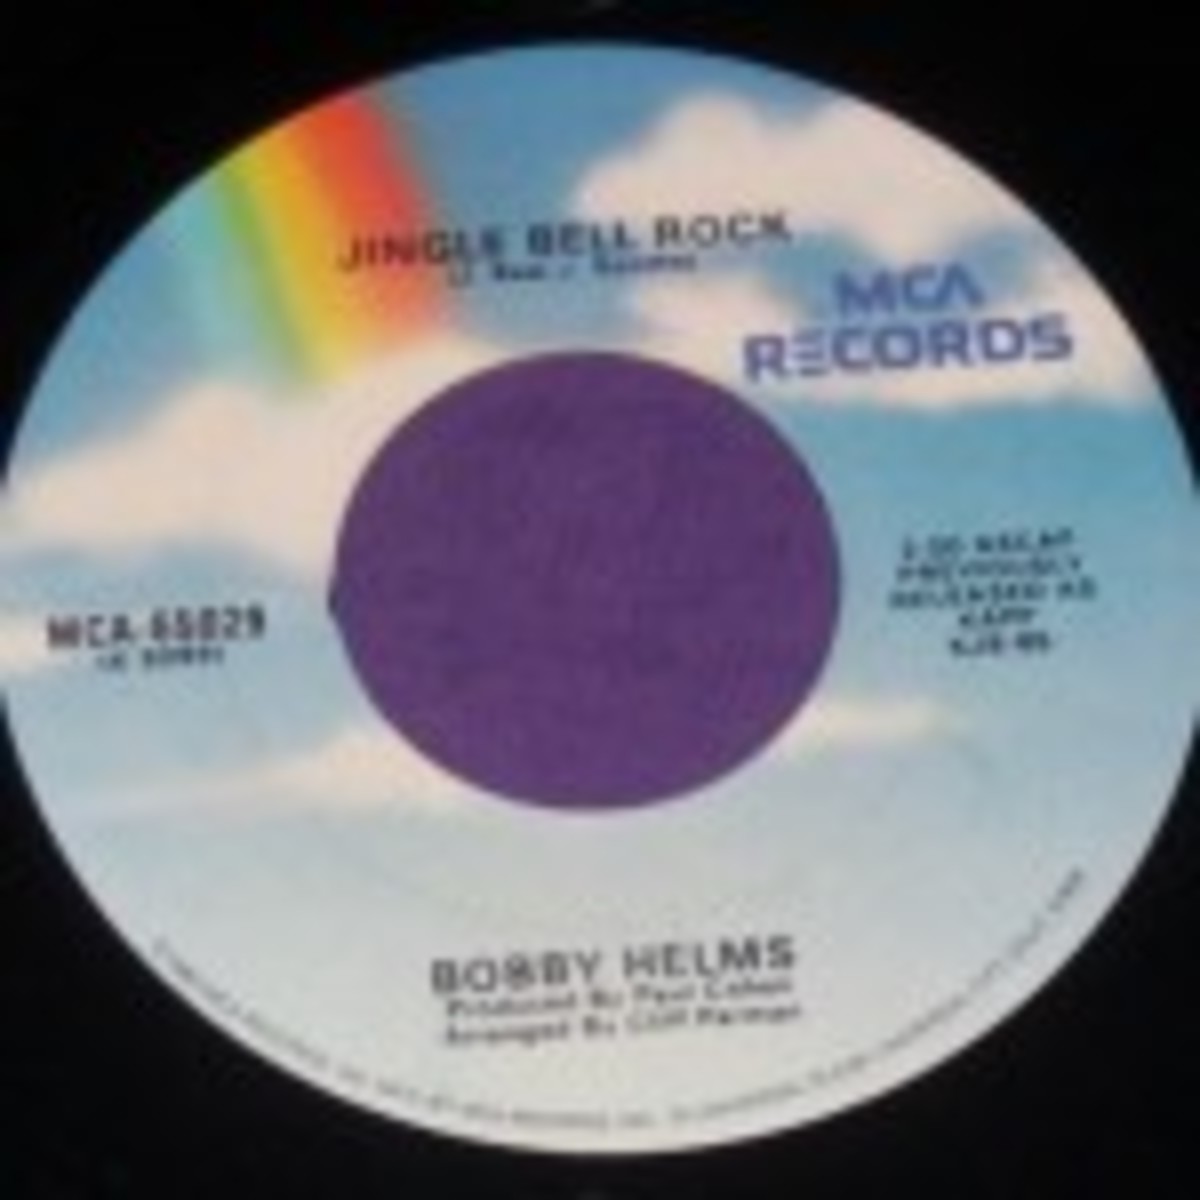 Bobby Helms Jingle Bell Rock